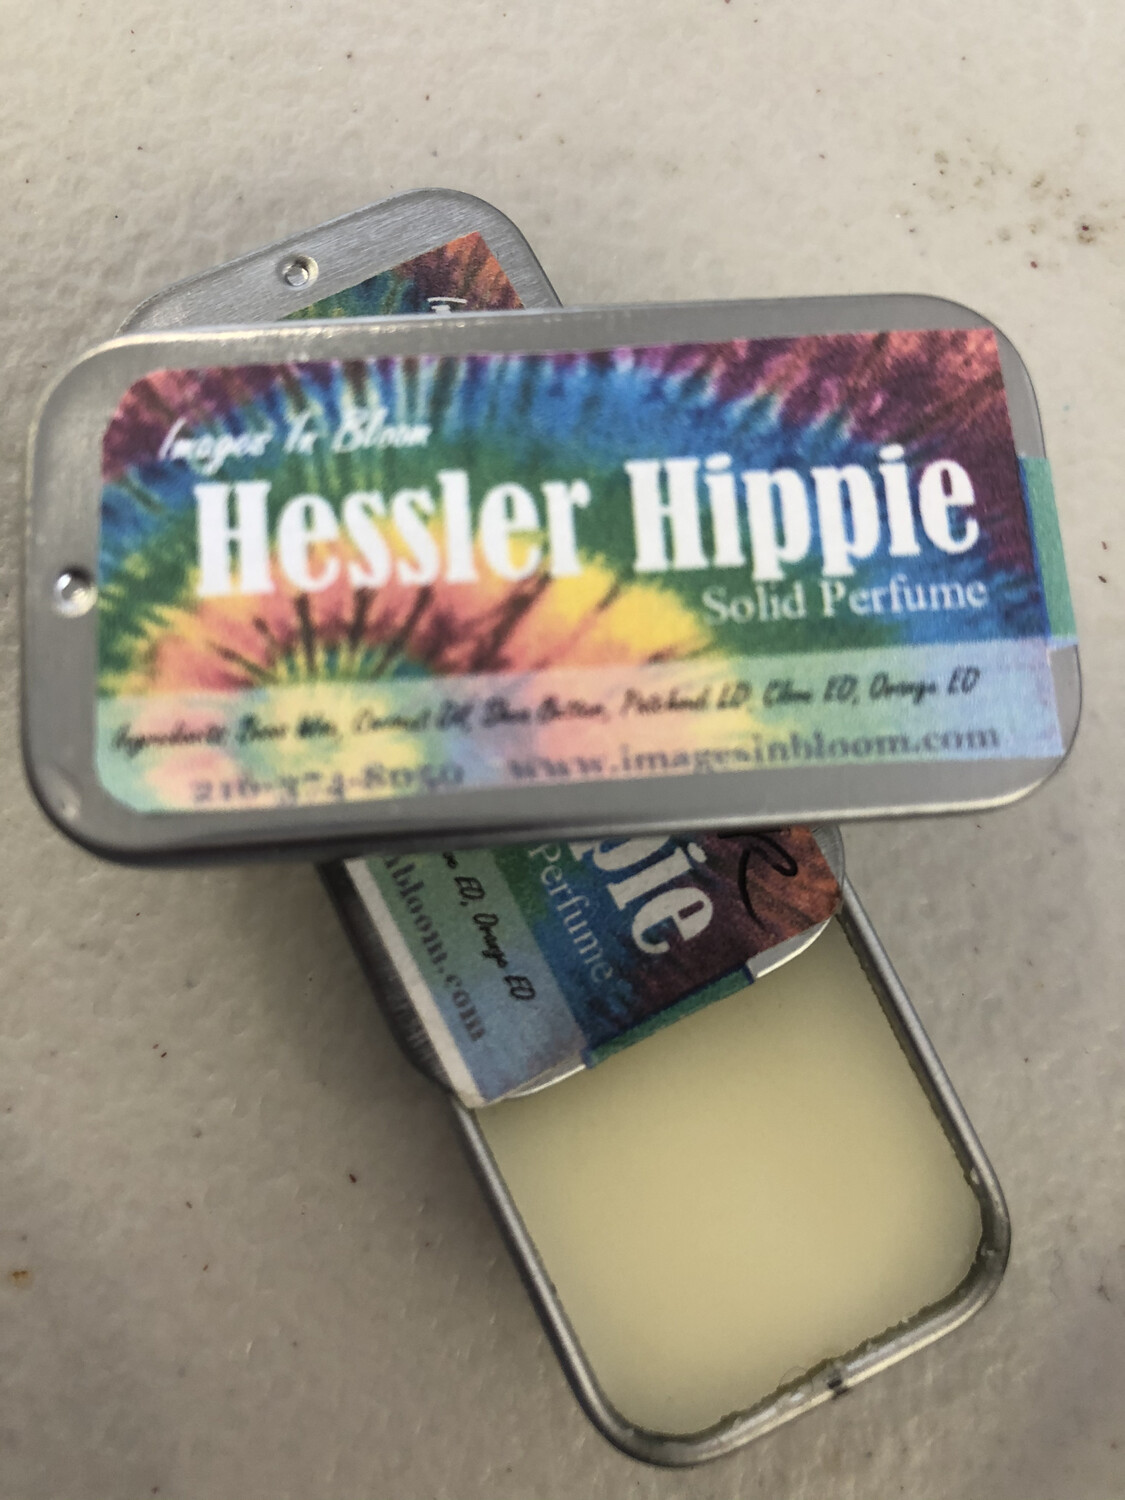 Hessler Hippie Solid Perfume